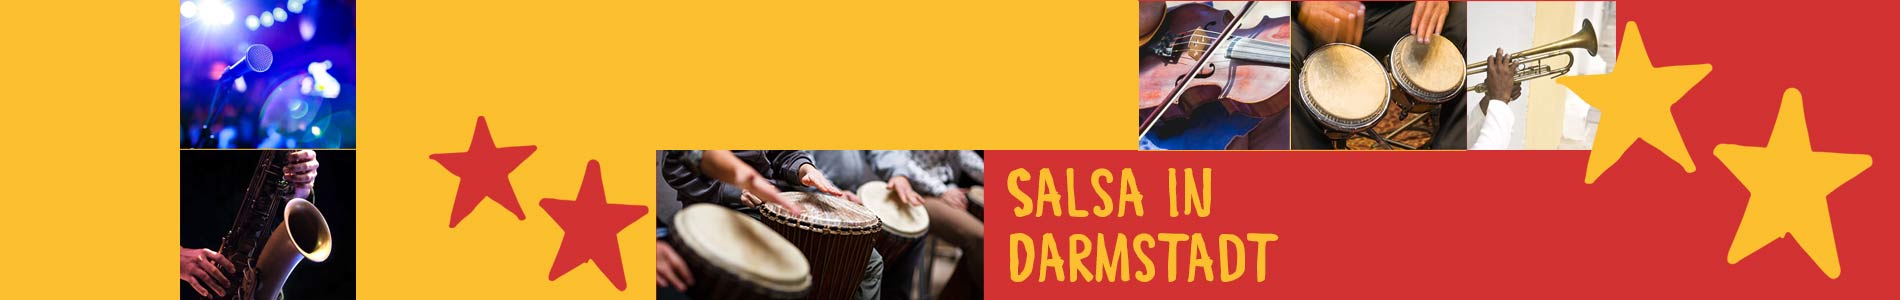 Salsa in Darmstadt – Salsa lernen und tanzen, Tanzkurse, Partys, Veranstaltungen